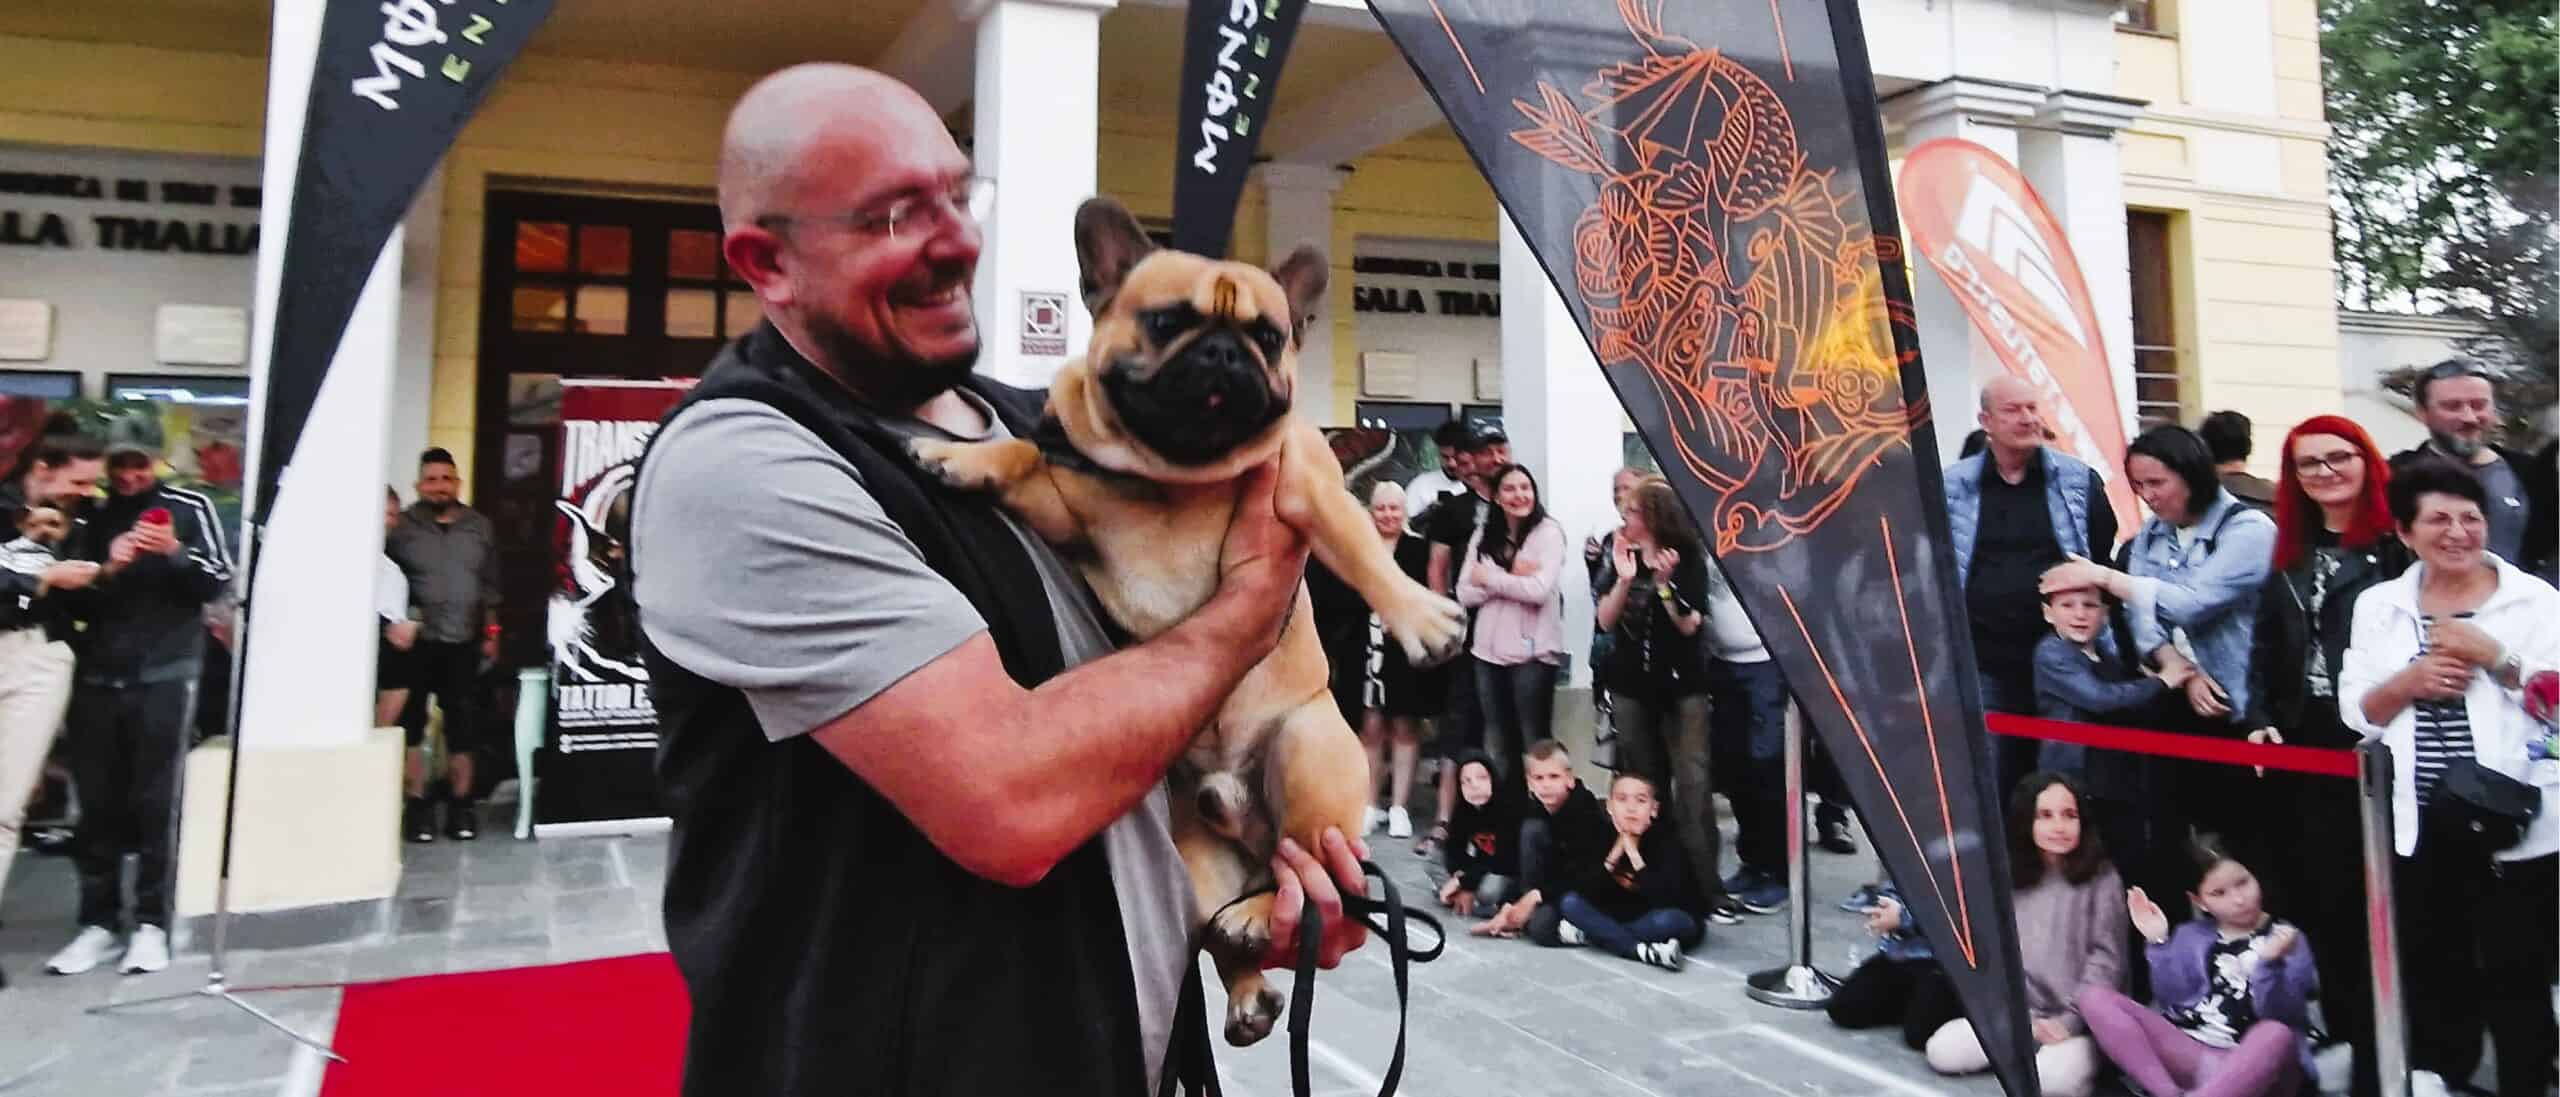 țuchi, un căţel abandonat în judeţul sibiu, a ajuns vedetă în reclame din sua și a câștigat o paradă cu 200 de câini la transilvania tattoo expo (foto)